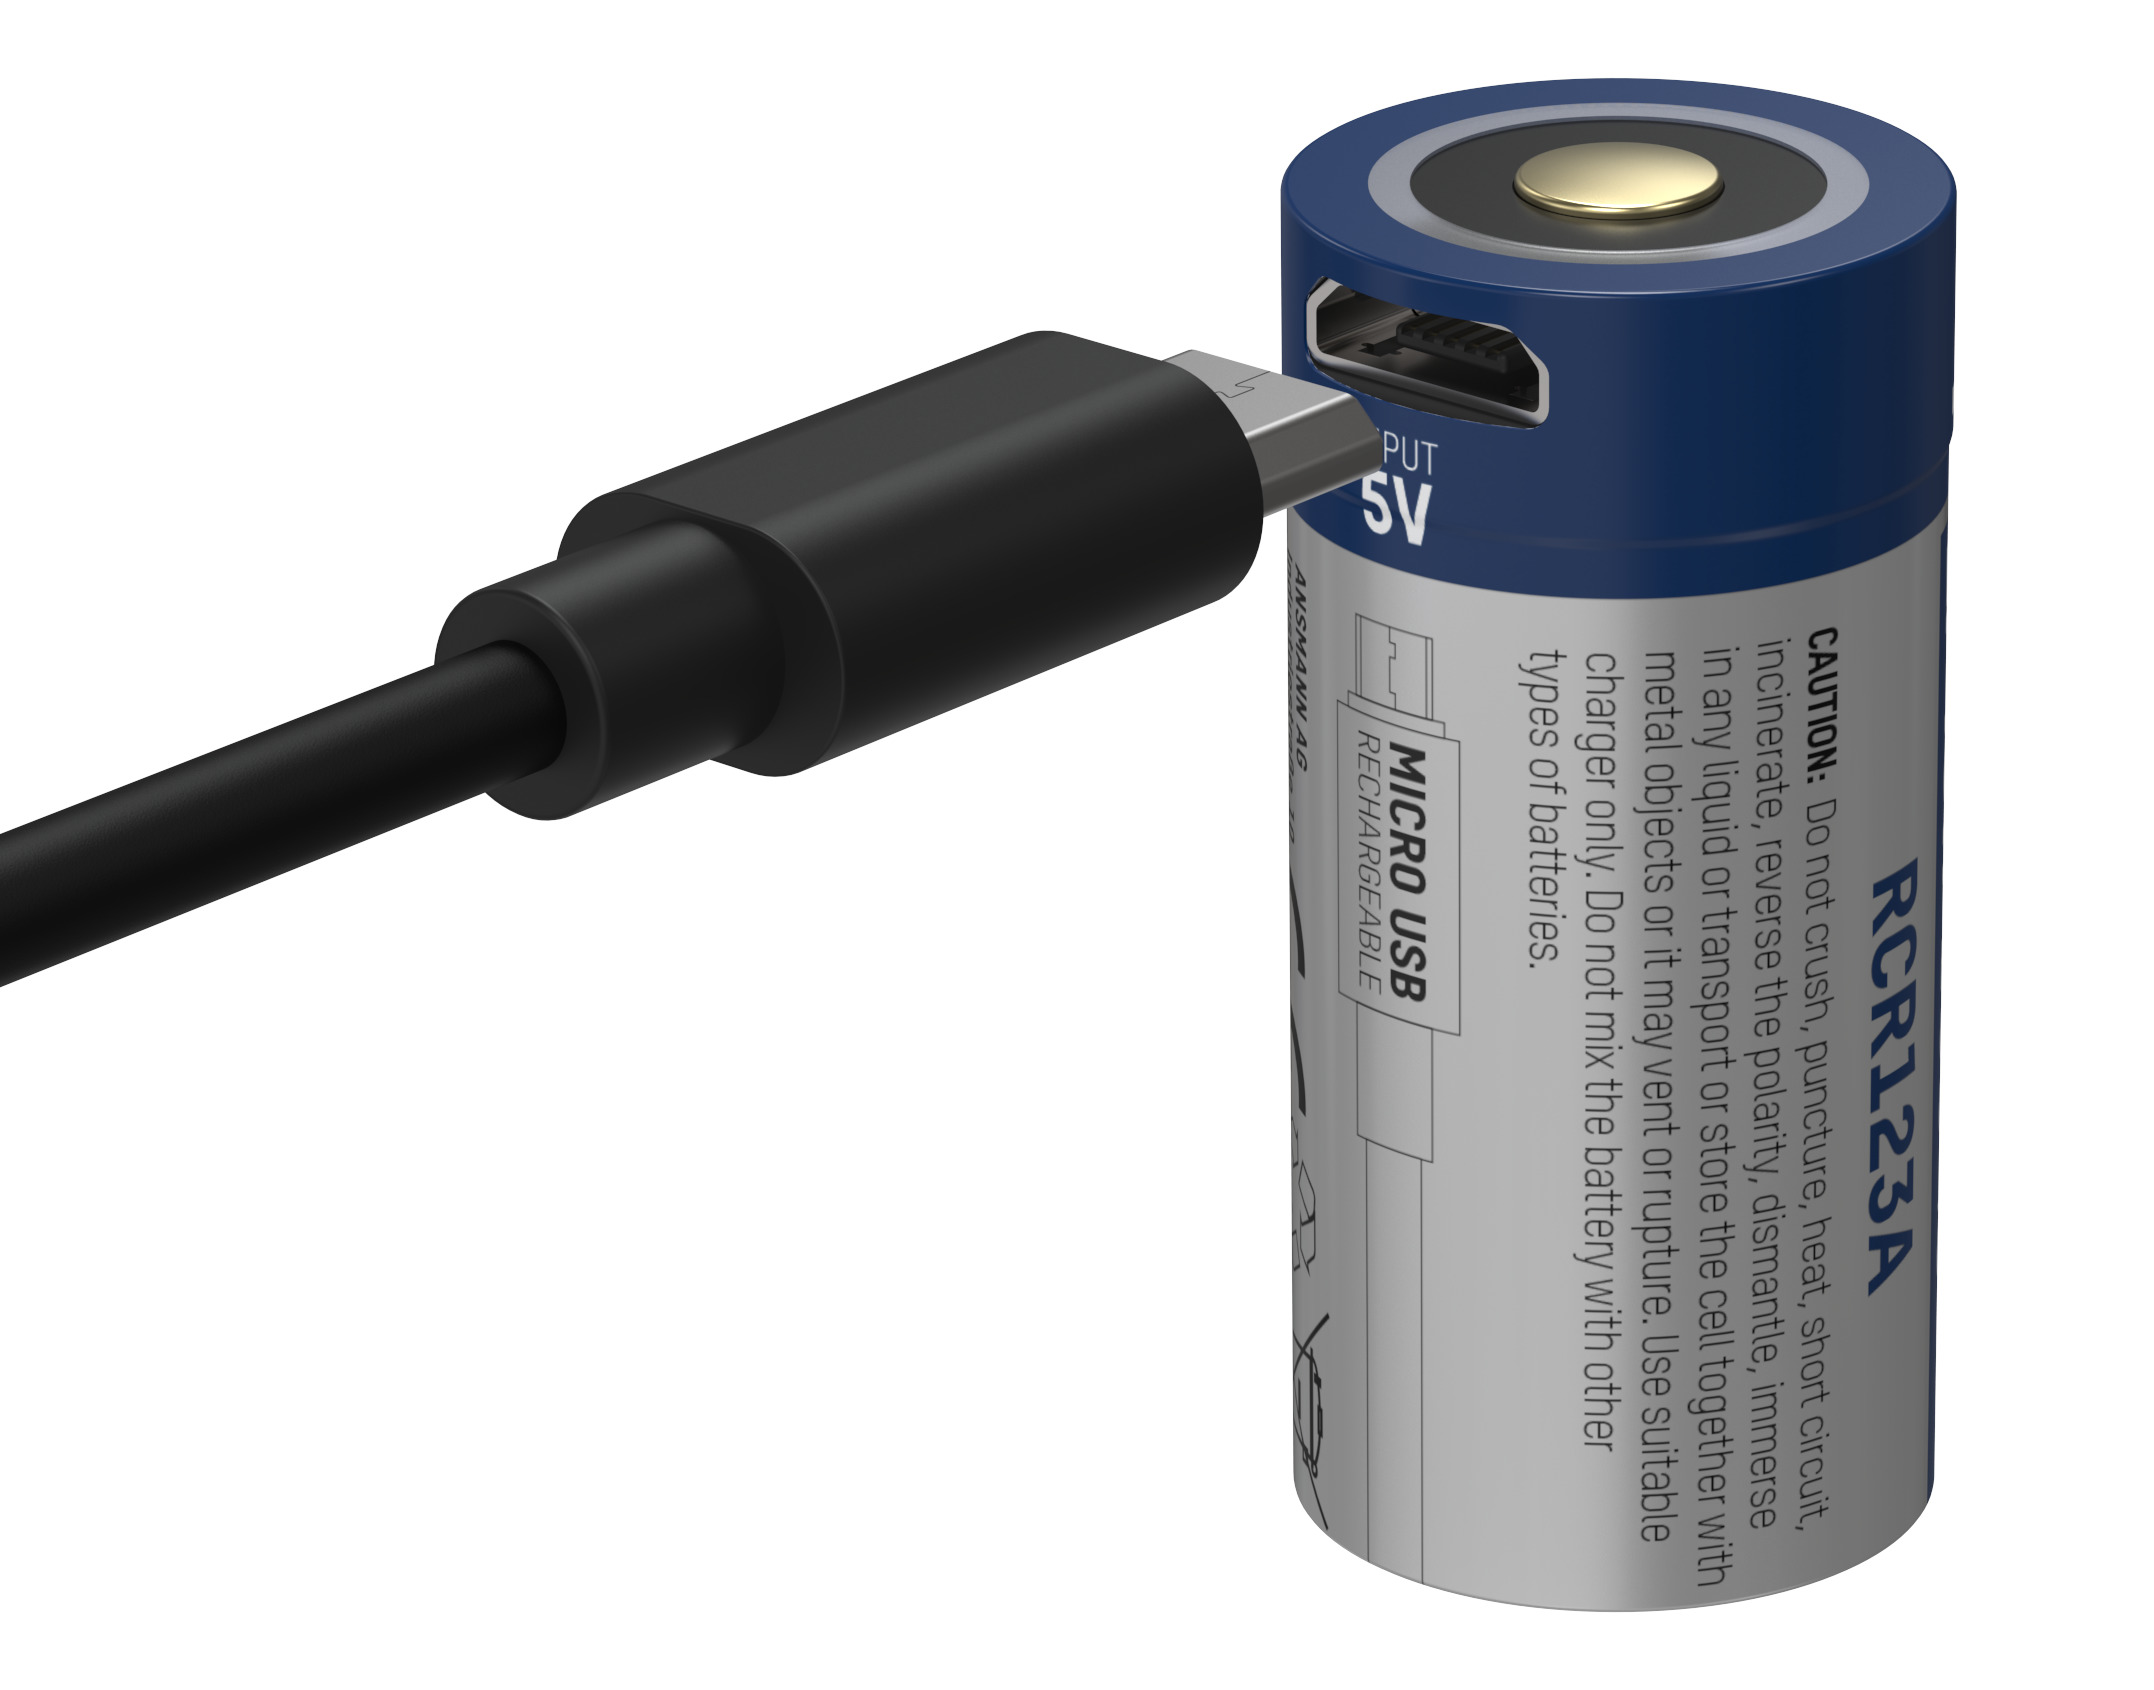 Ansmann lithiumbatterij CR123A met micro-USB-aansluiting voor praktisch opladen